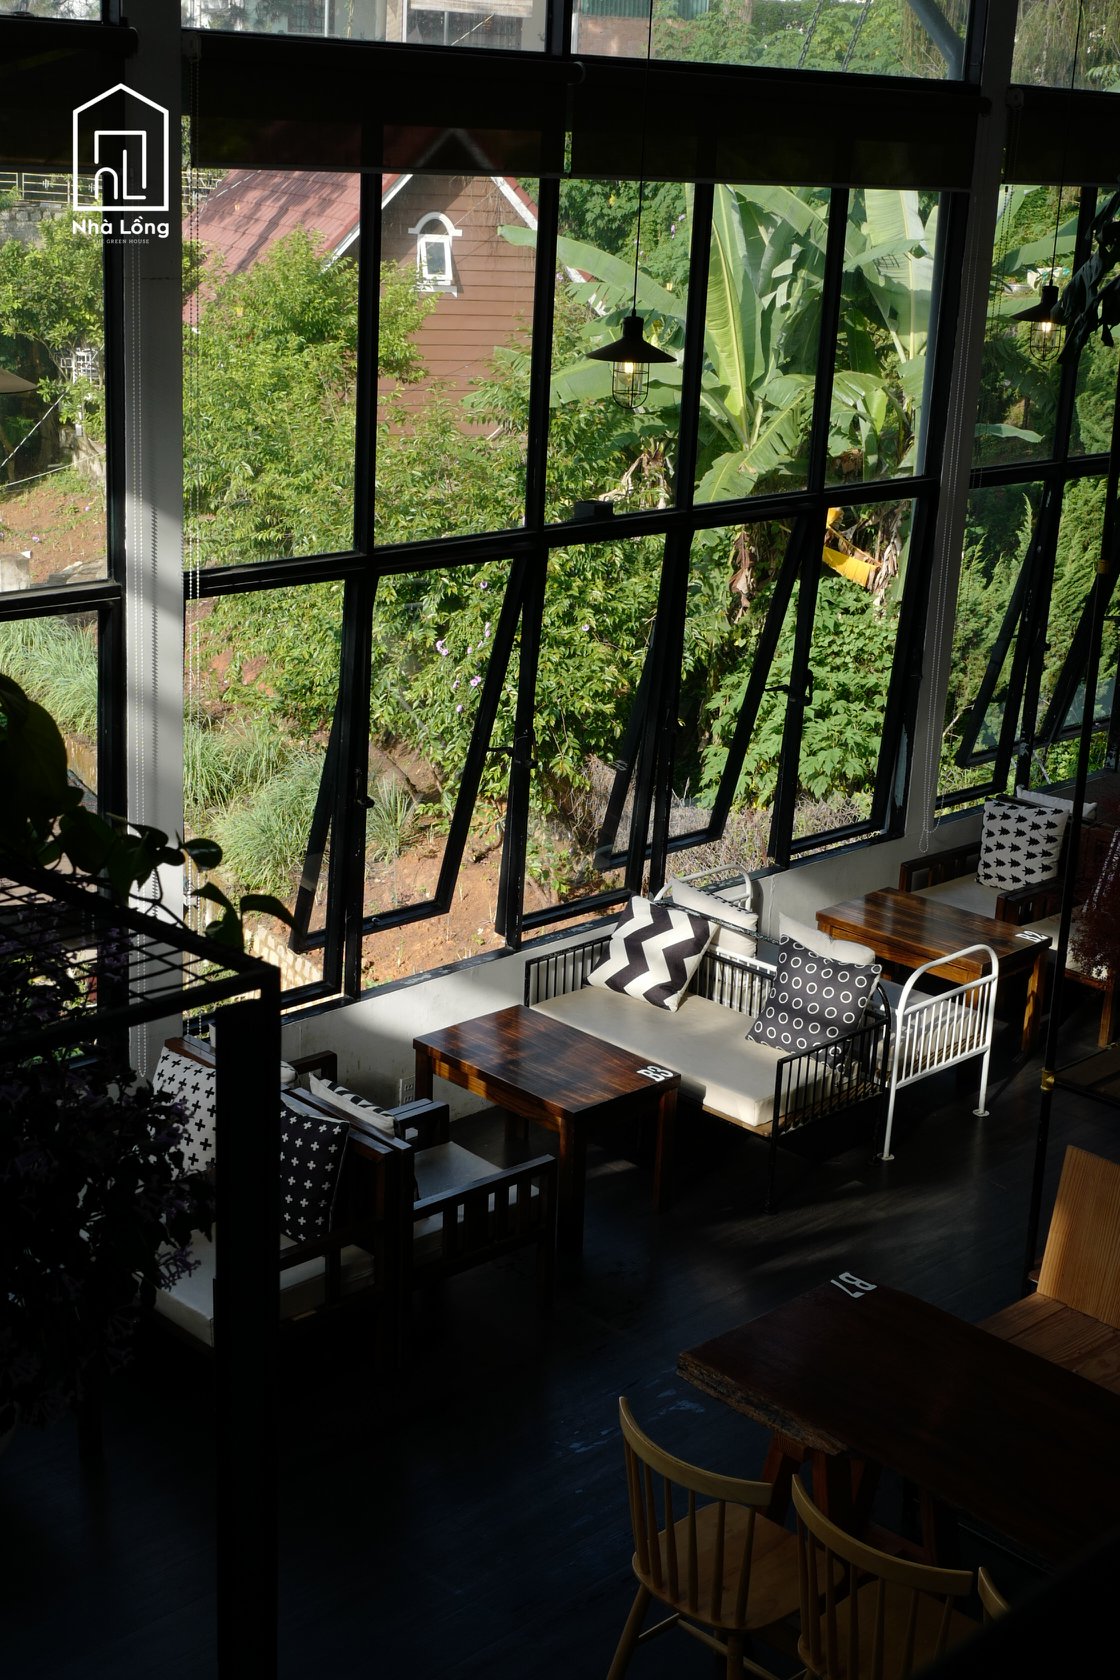 Nhà Lồng Coffee – Quán café lung linh với view thung lũng cực đẹp 26